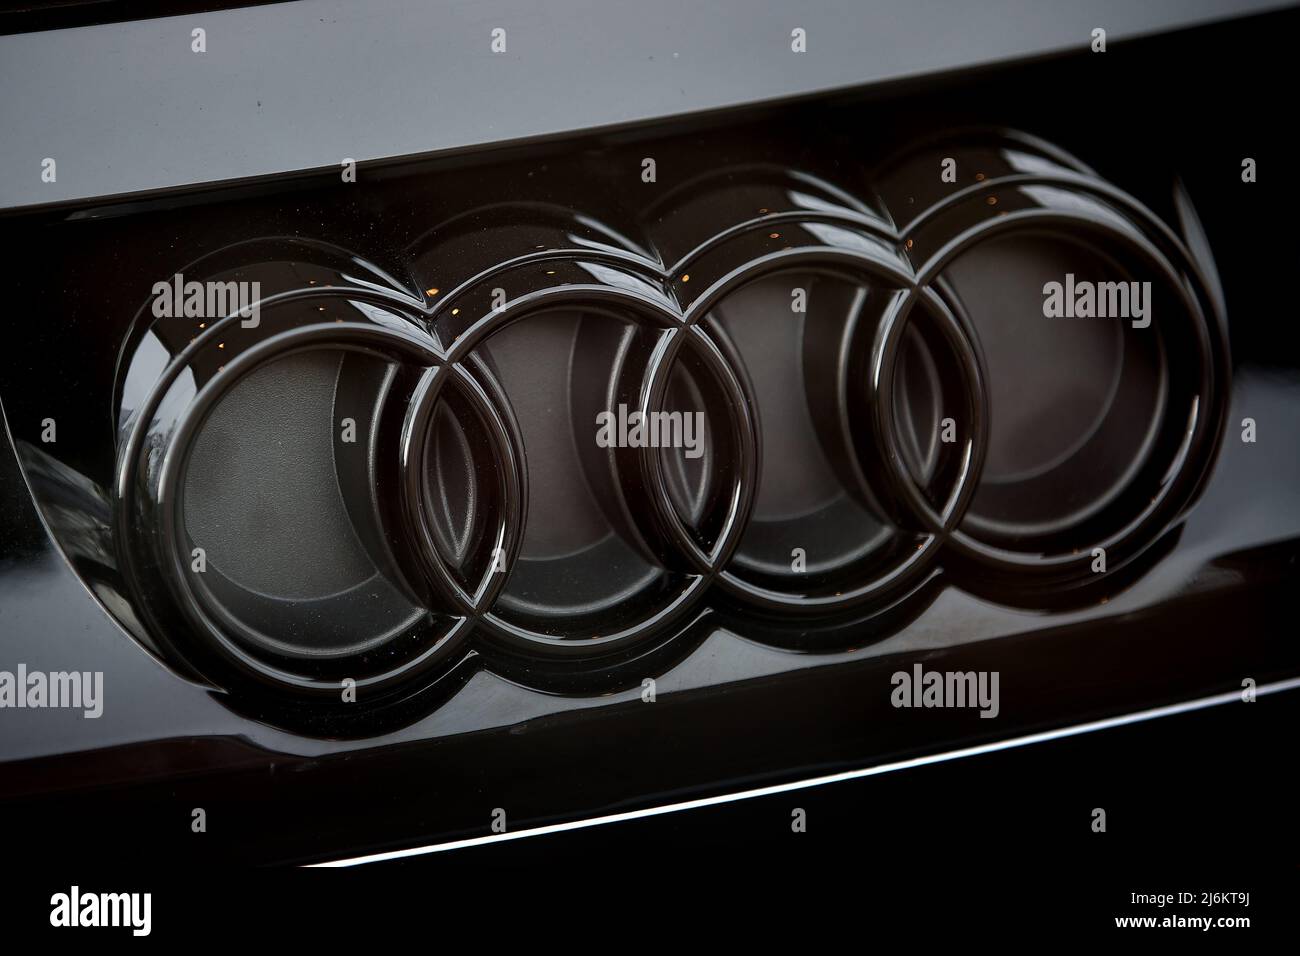 Logo d'Audi vu sur une nouvelle voiture e-tron GT Audi. Banque D'Images